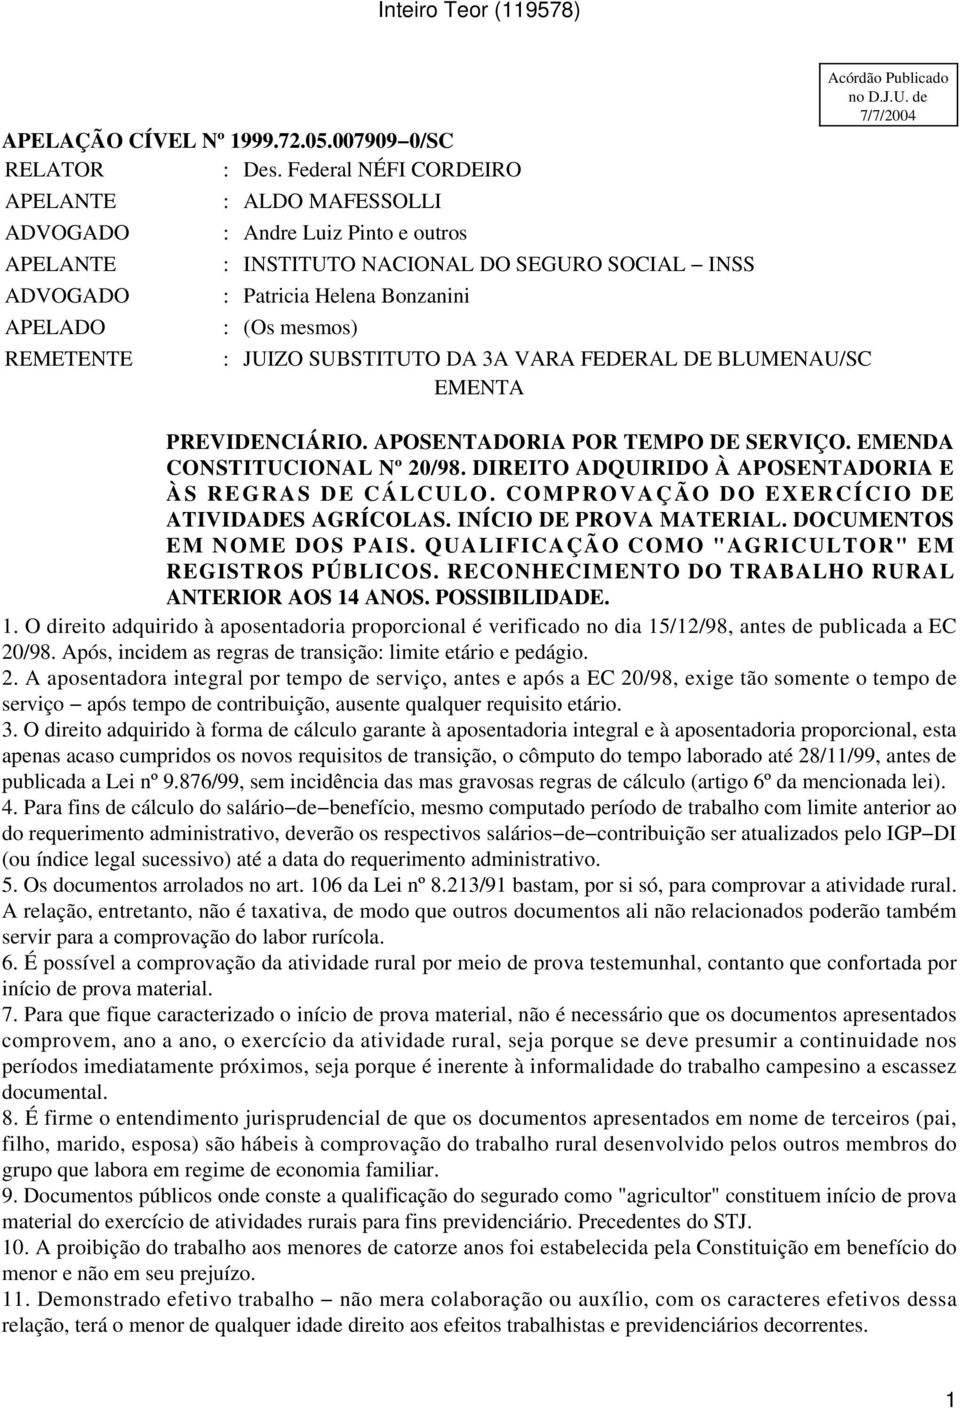 VARA FEDERAL DE BLUMENAU/SC EMENTA Acórdão Publicado no D.J.U. de 7/7/2004 PREVIDENCIÁRIO. APOSENTADORIA POR TEMPO DE SERVIÇO. EMENDA CONSTITUCIONAL Nº 20/98.